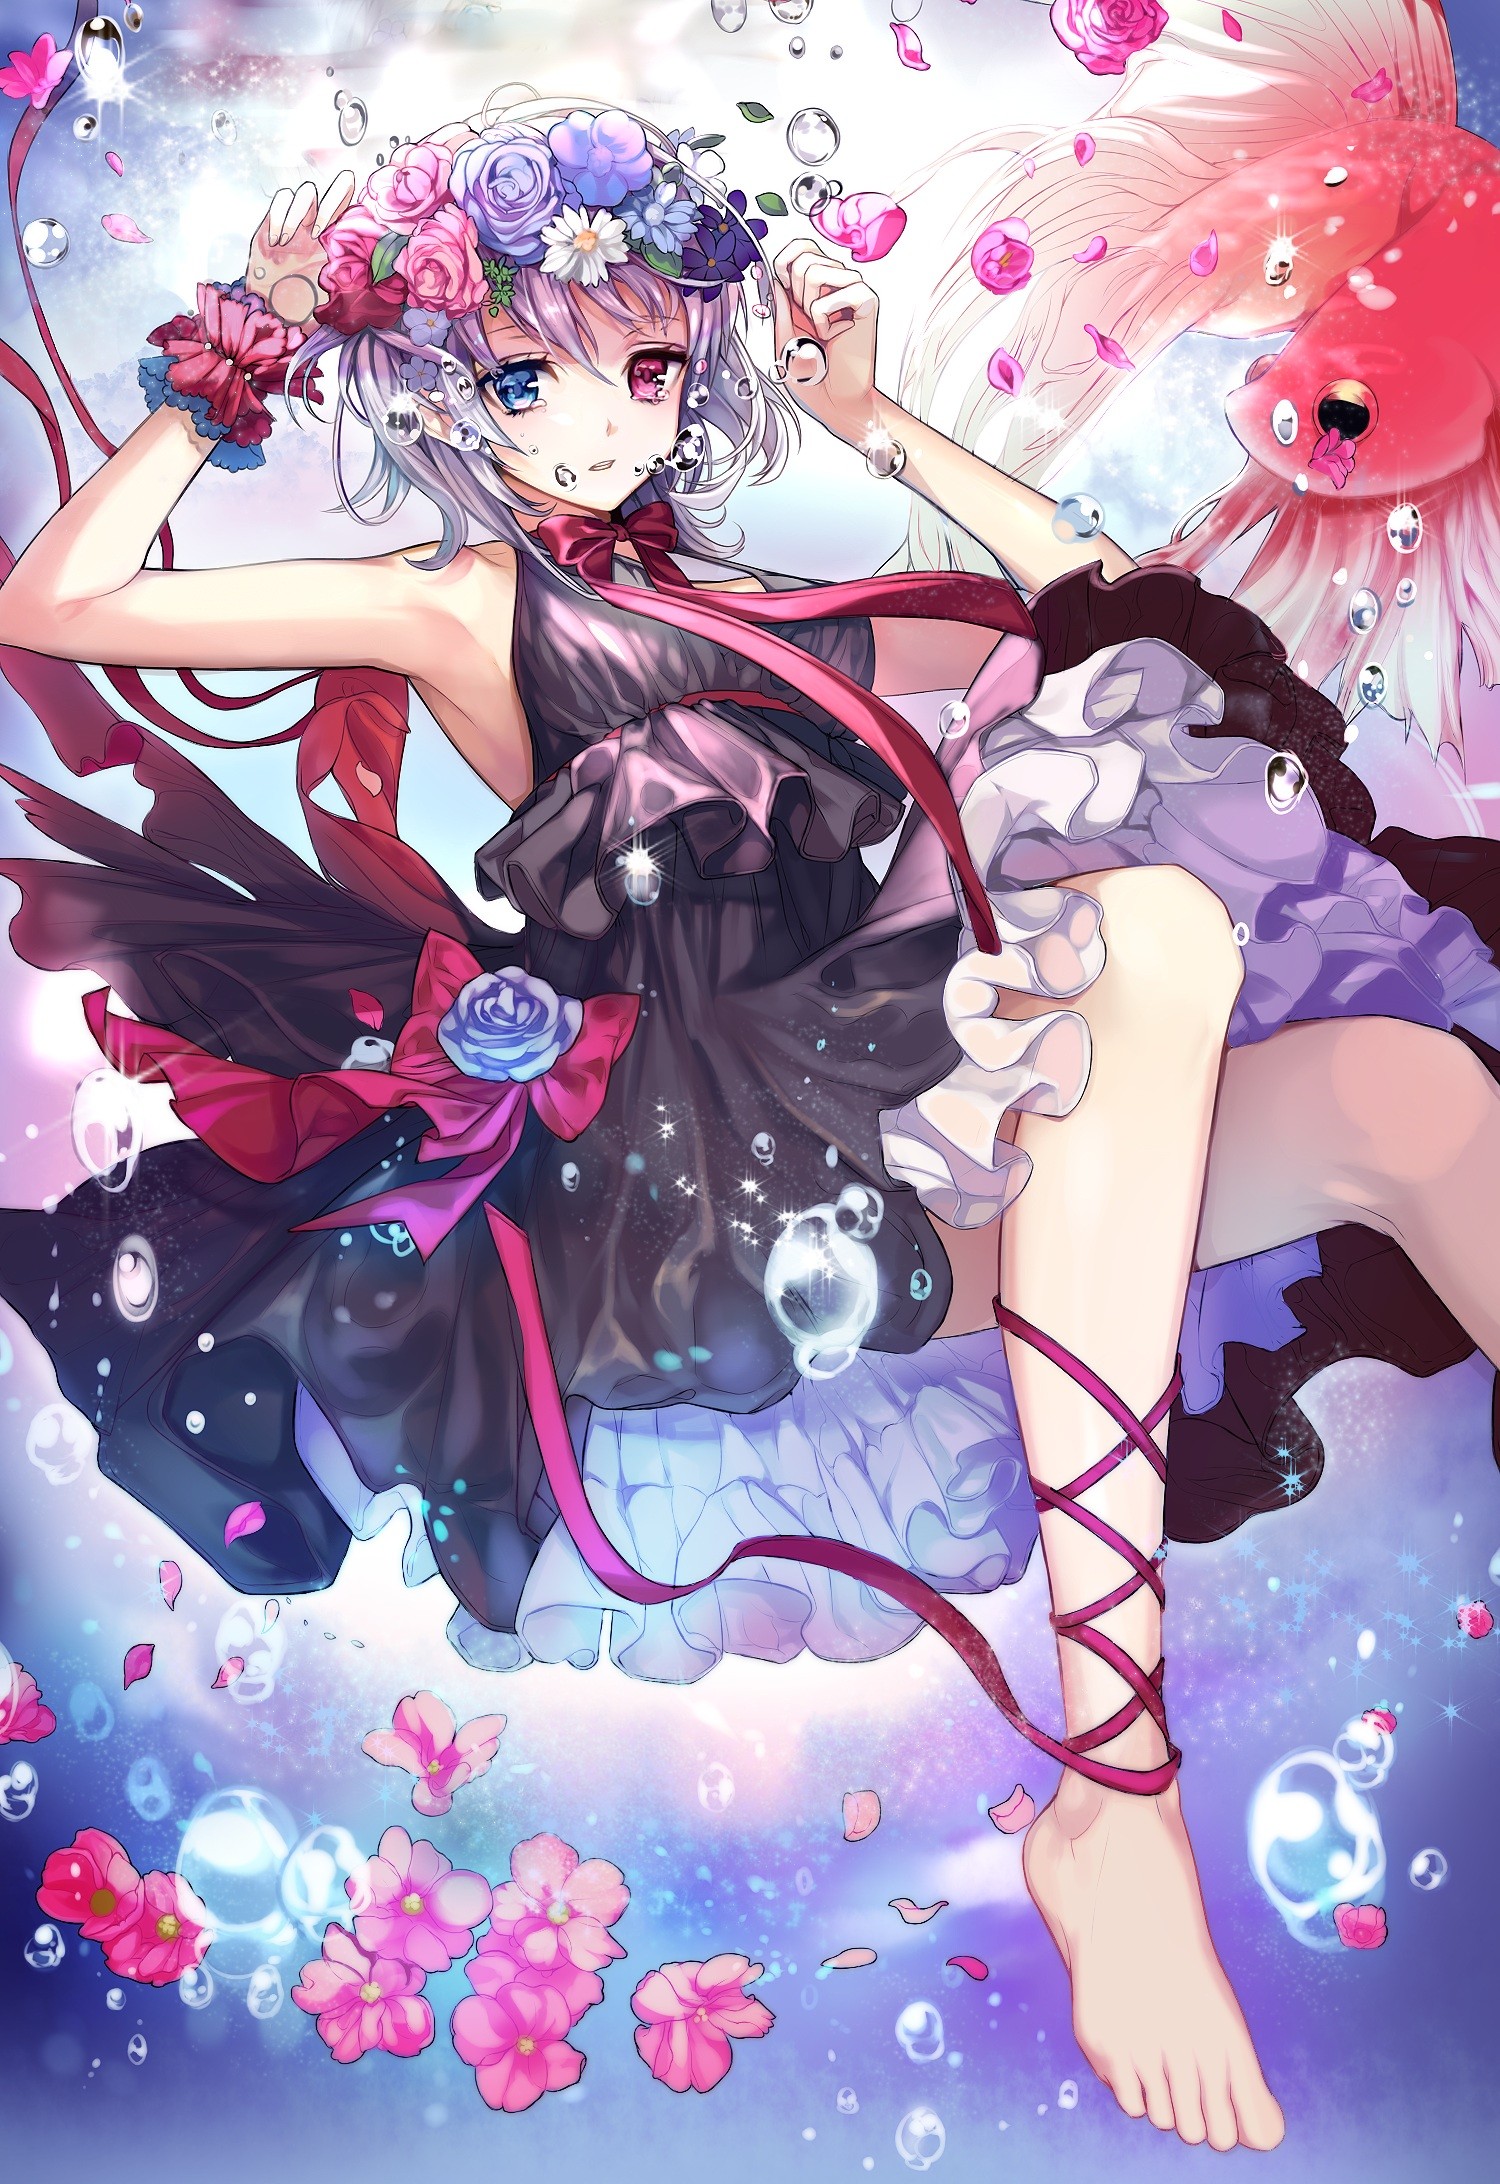 Anime 1500x2184 anime anime girls Sword Girls (game) dress feet heterochromia Pixiv legs barefoot flower crown black dress fantasy art fantasy girl flowers